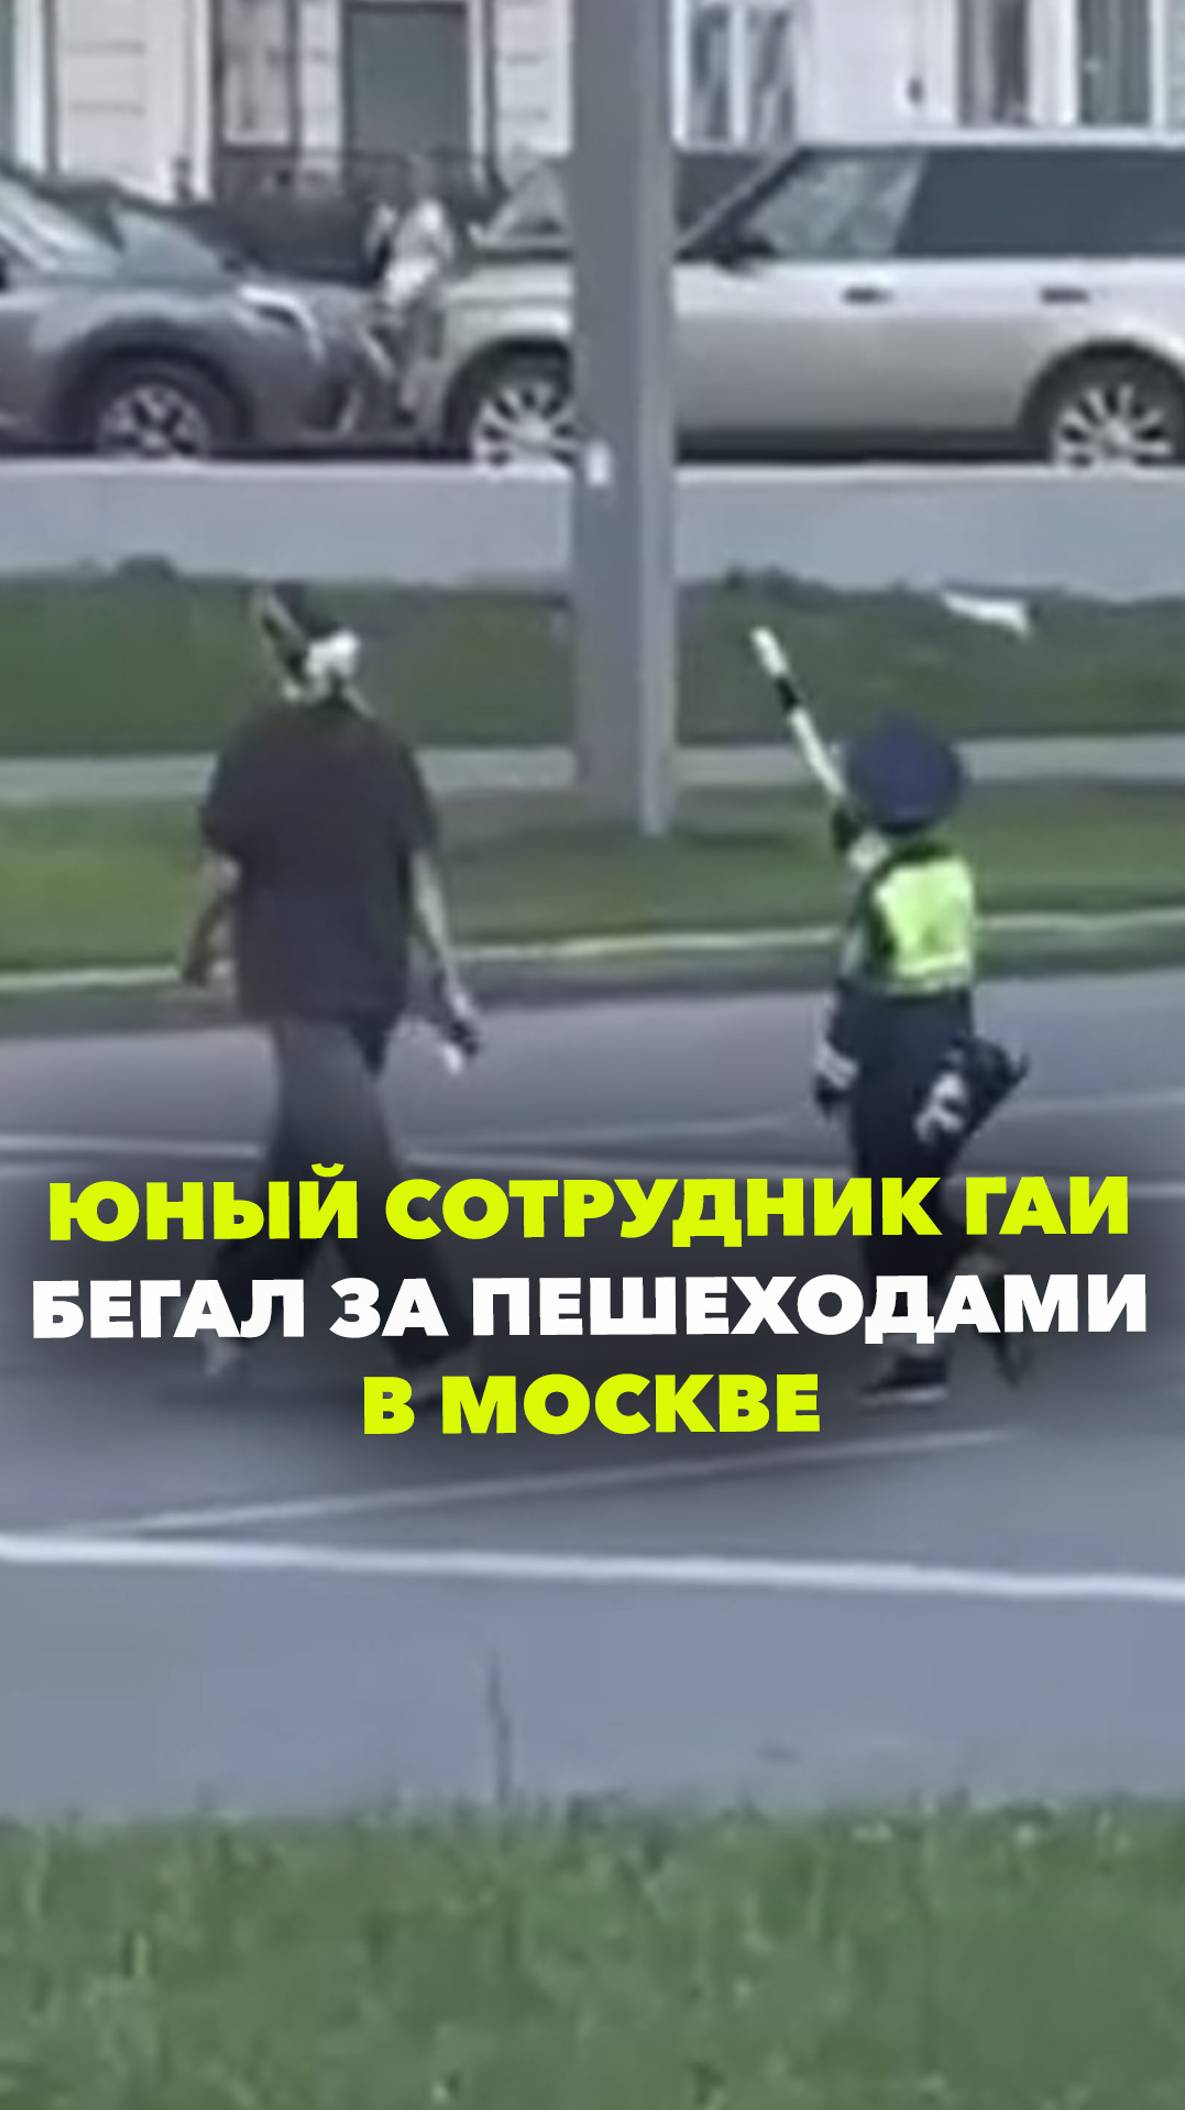 Наноинспектор ГАИ бегал за пешеходами в Москве